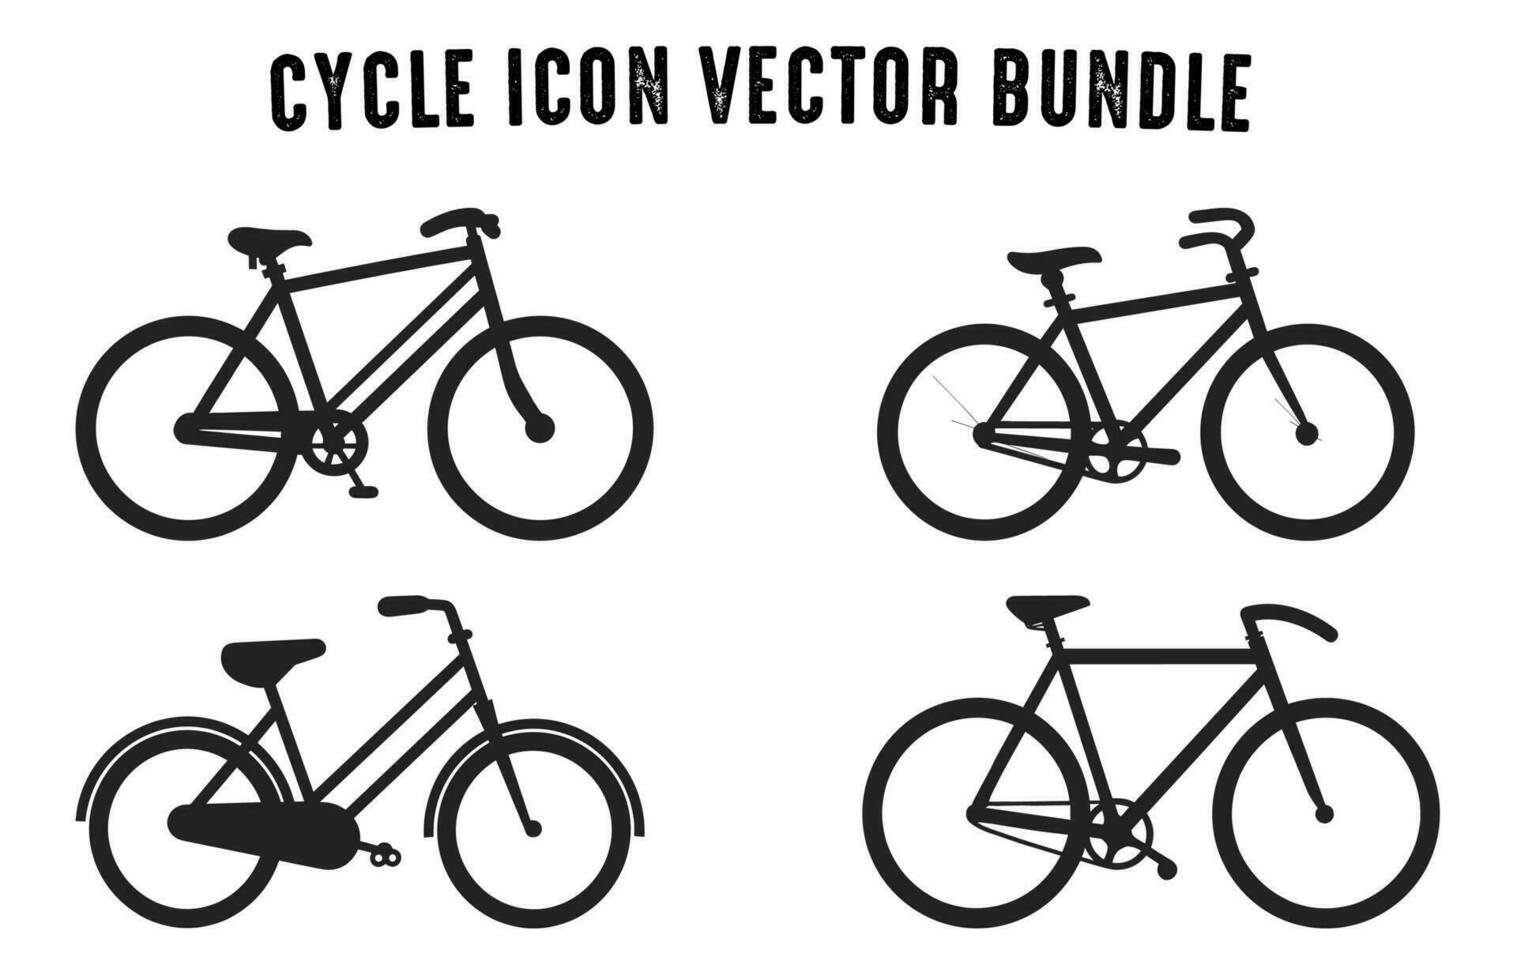 cykel ikon svart silhuett uppsättning, cykel vektor samling isolerat på en vit bakgrund, cykel silhuetter vektor illustration bunt